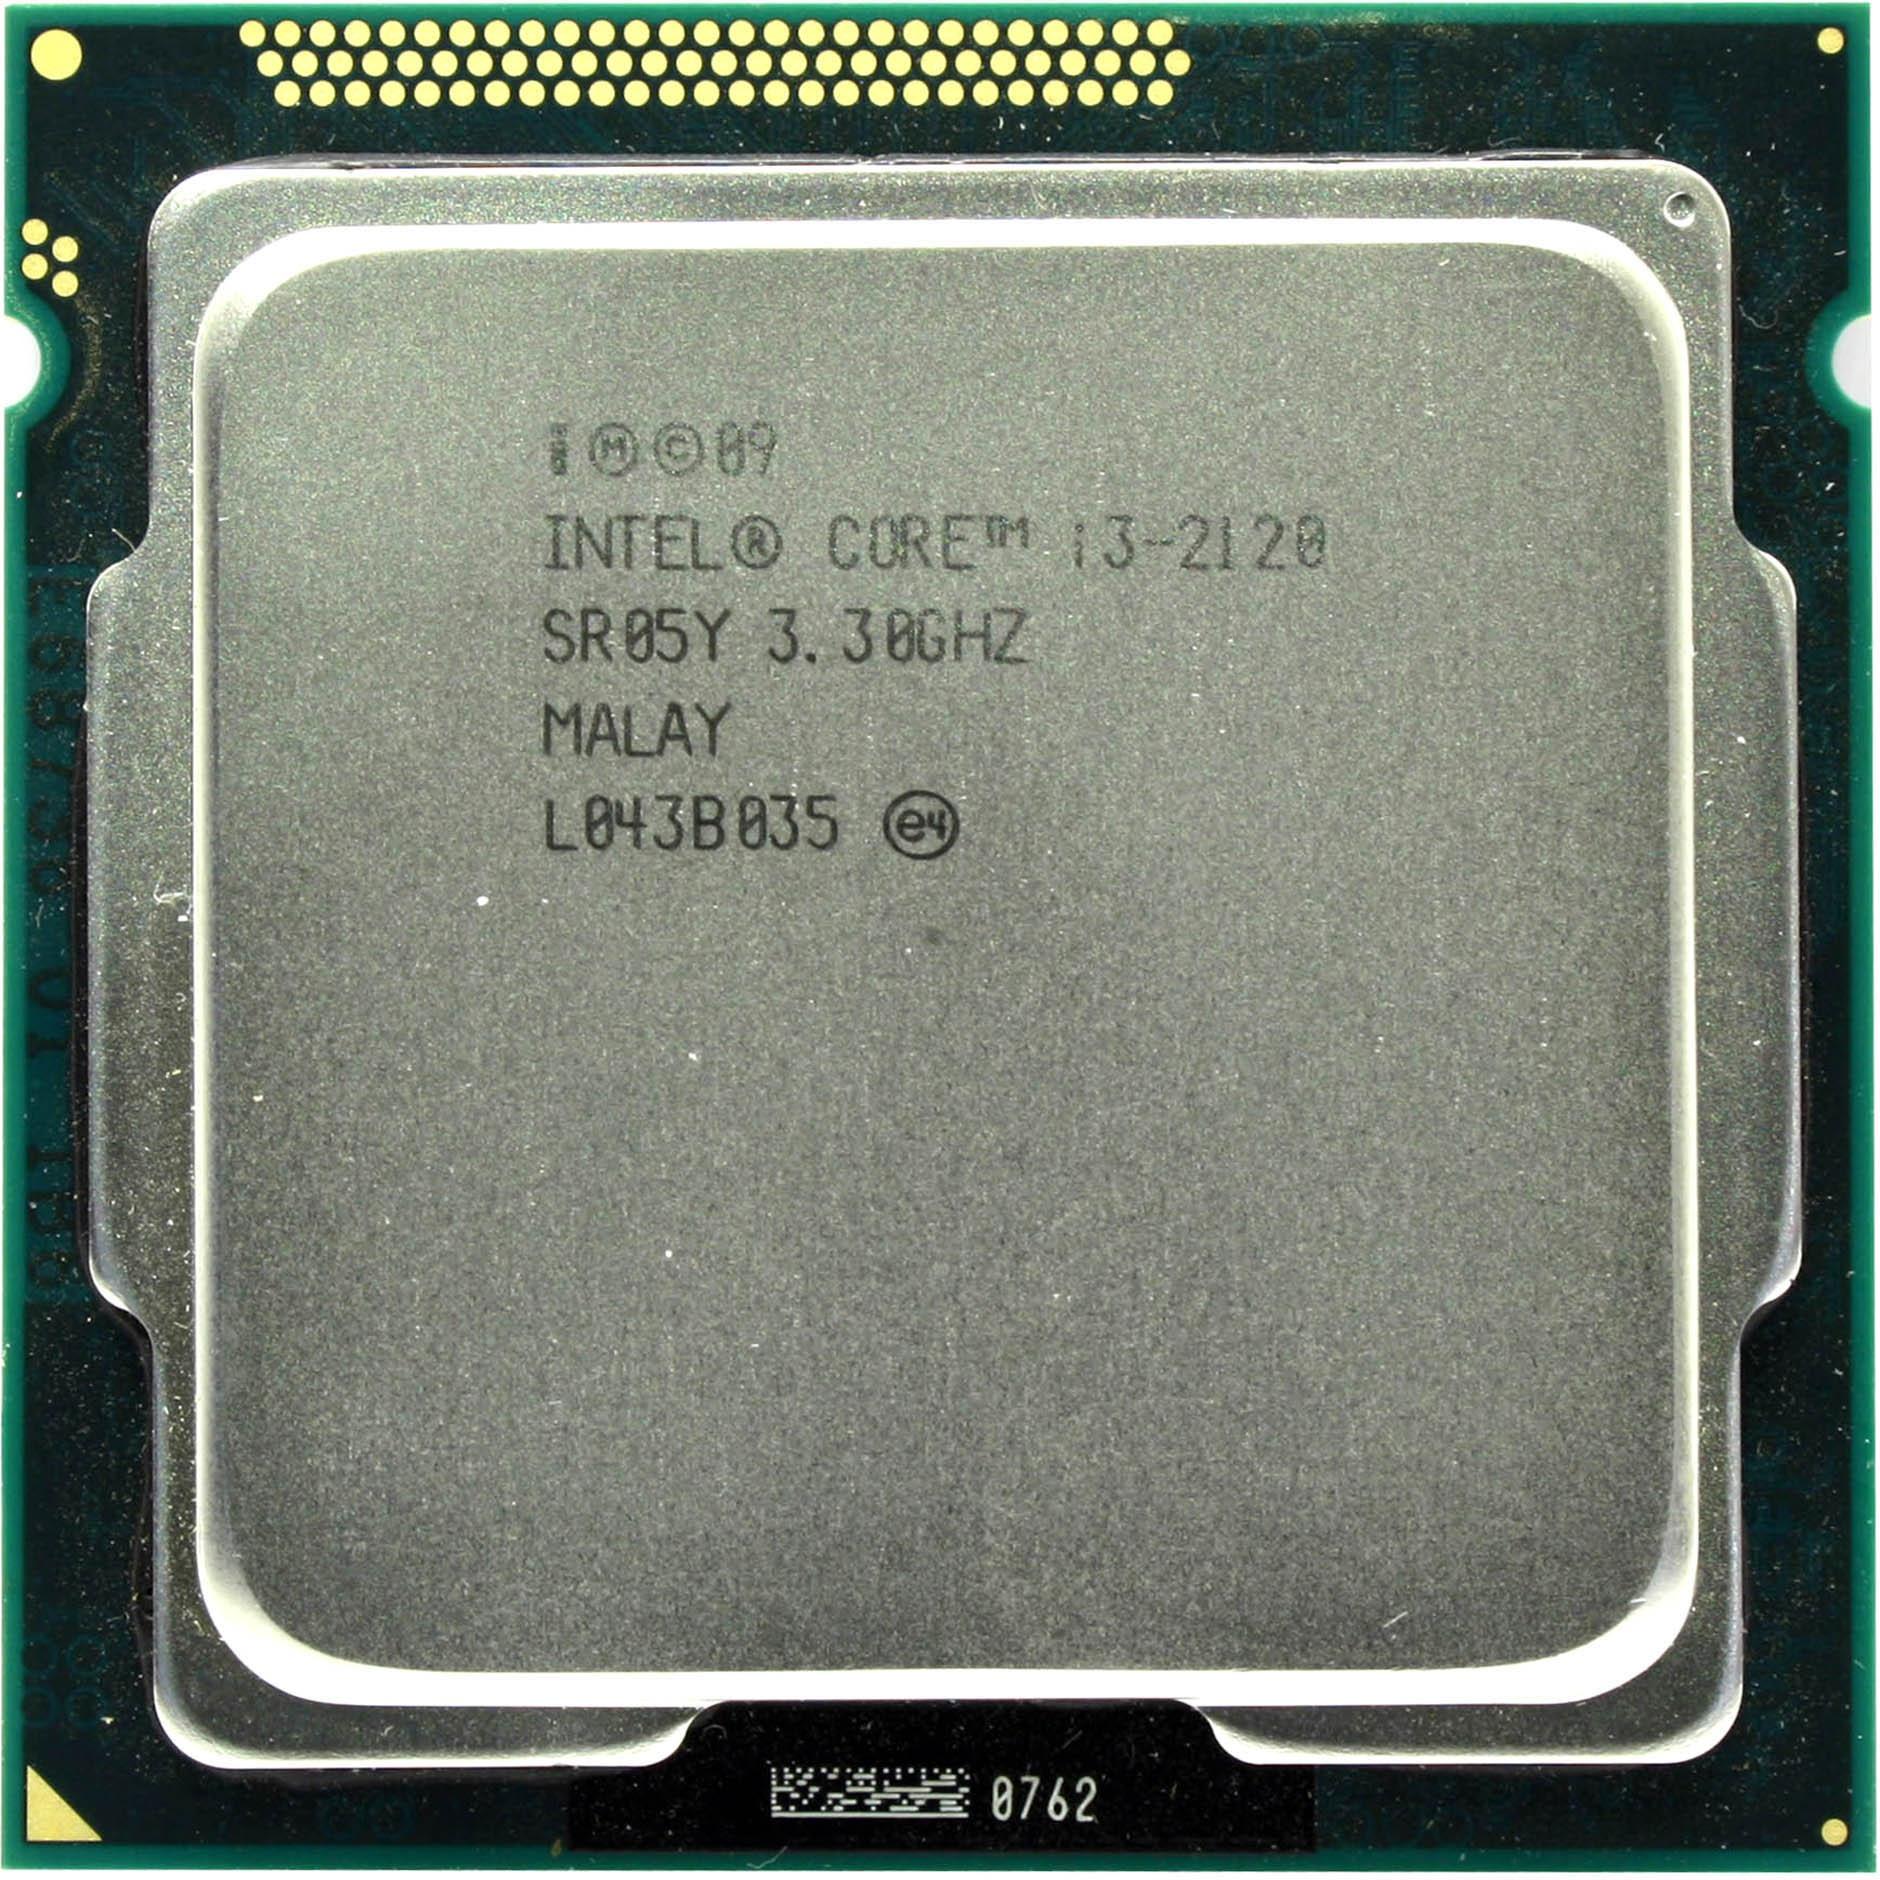 2120 сокет. Процессор Intel Core i3-2130 Sandy Bridge. Intel Core i5 2400 сокет. Intel Xeon e3-1220 1155. Intel Core i3-2120 Sandy Bridge lga1155, 2 x 3300 МГЦ.